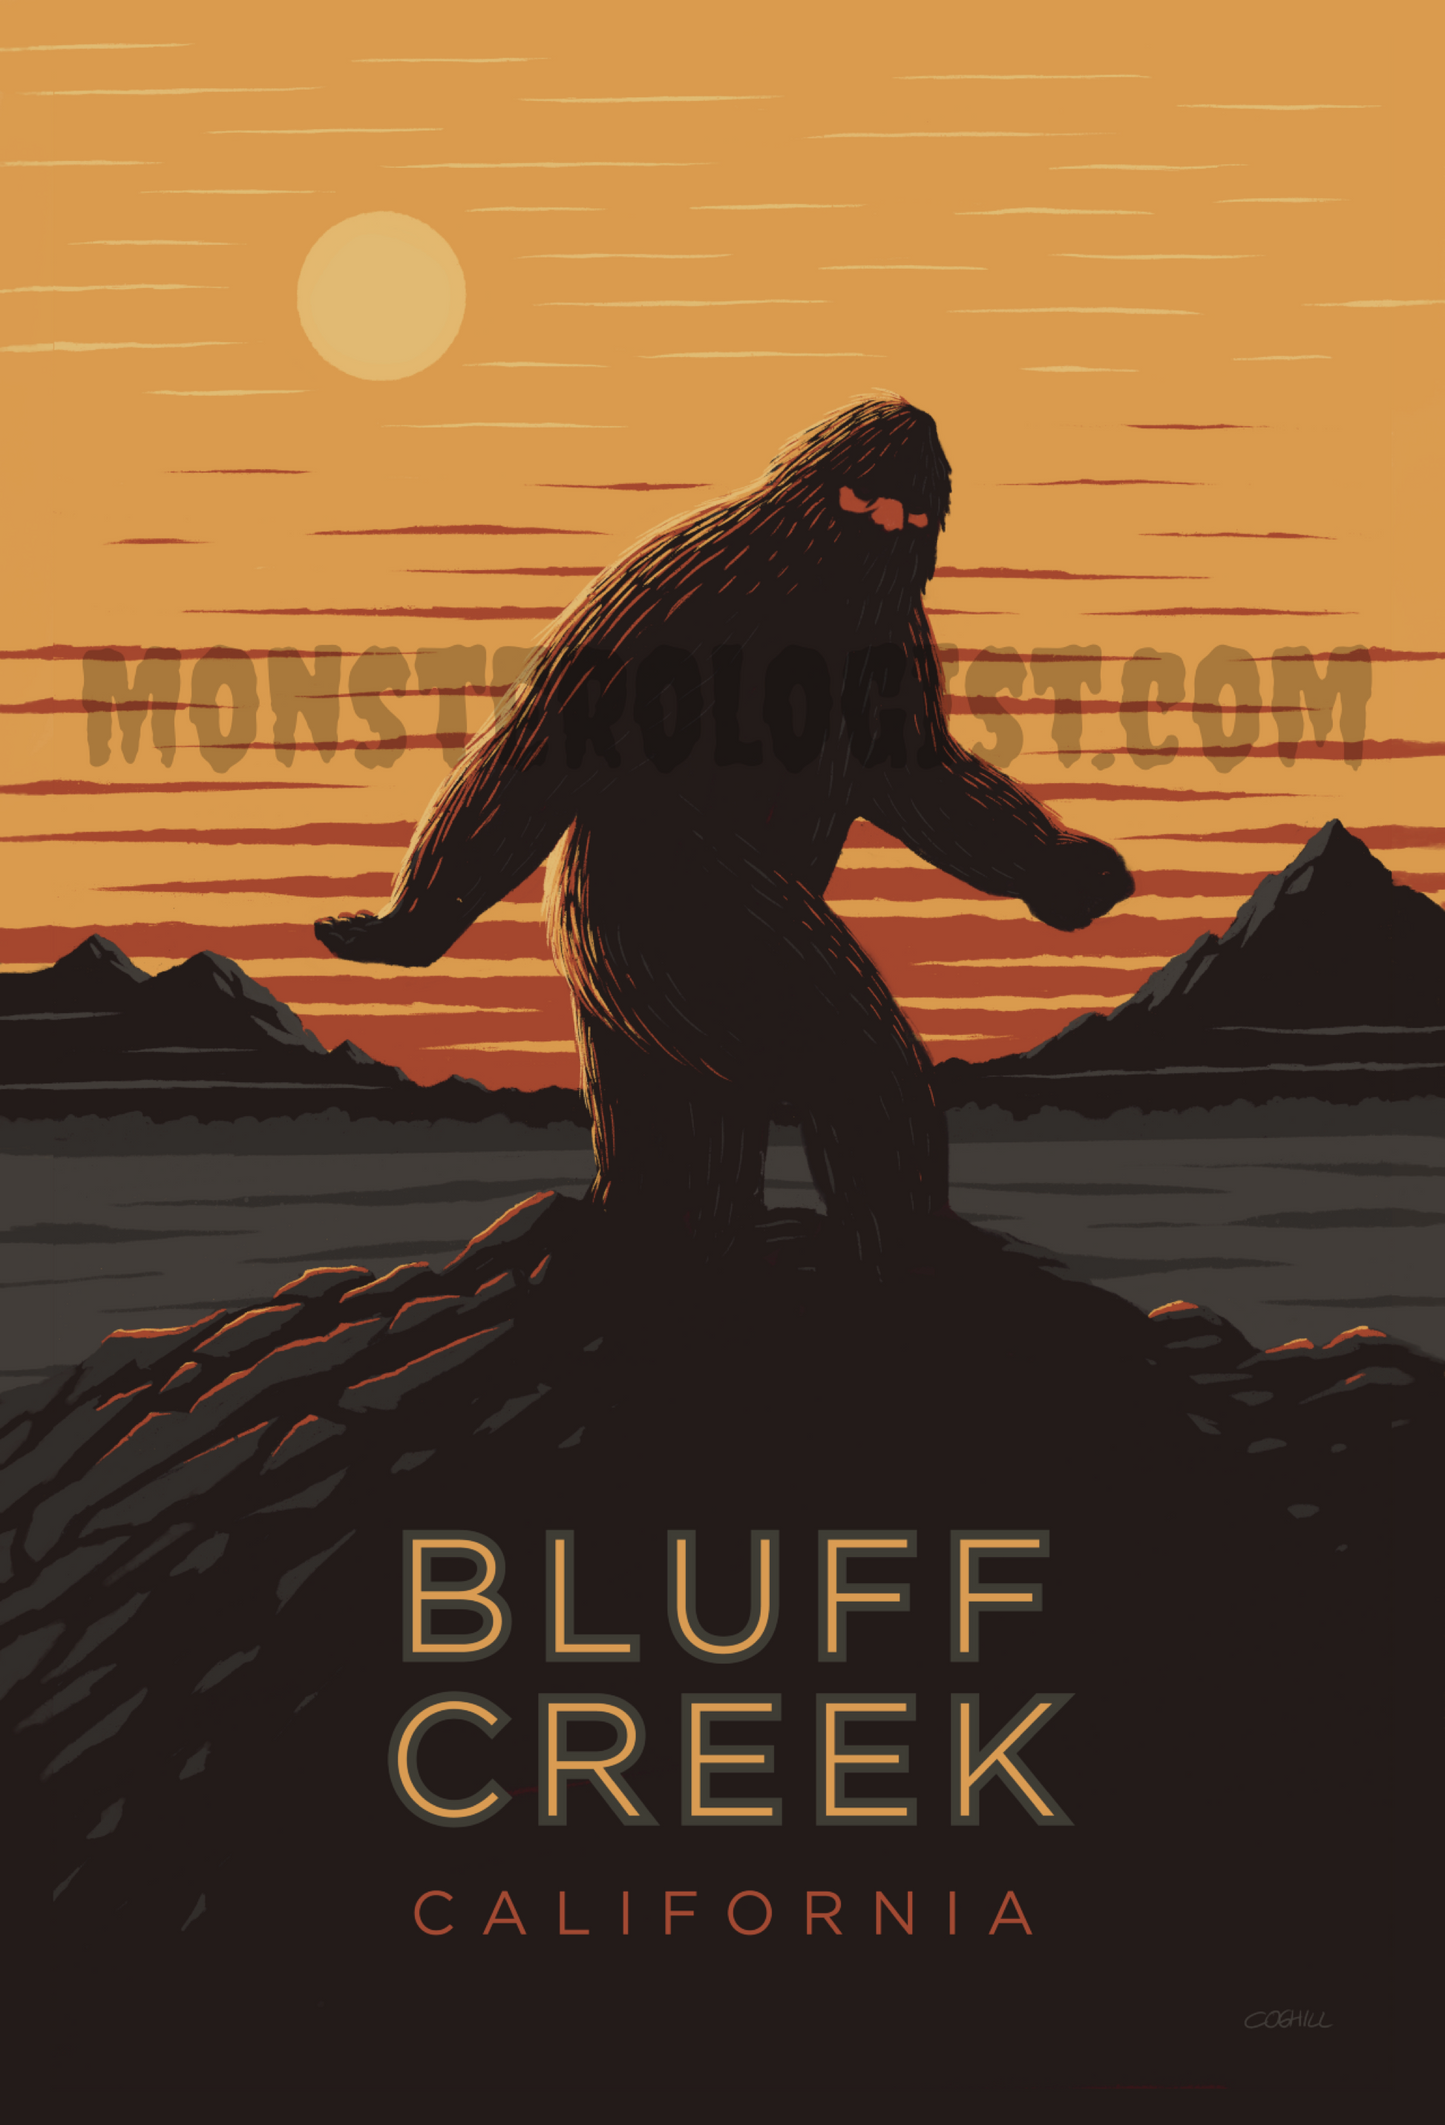 Bluff Creek, California travel postcard 4x6